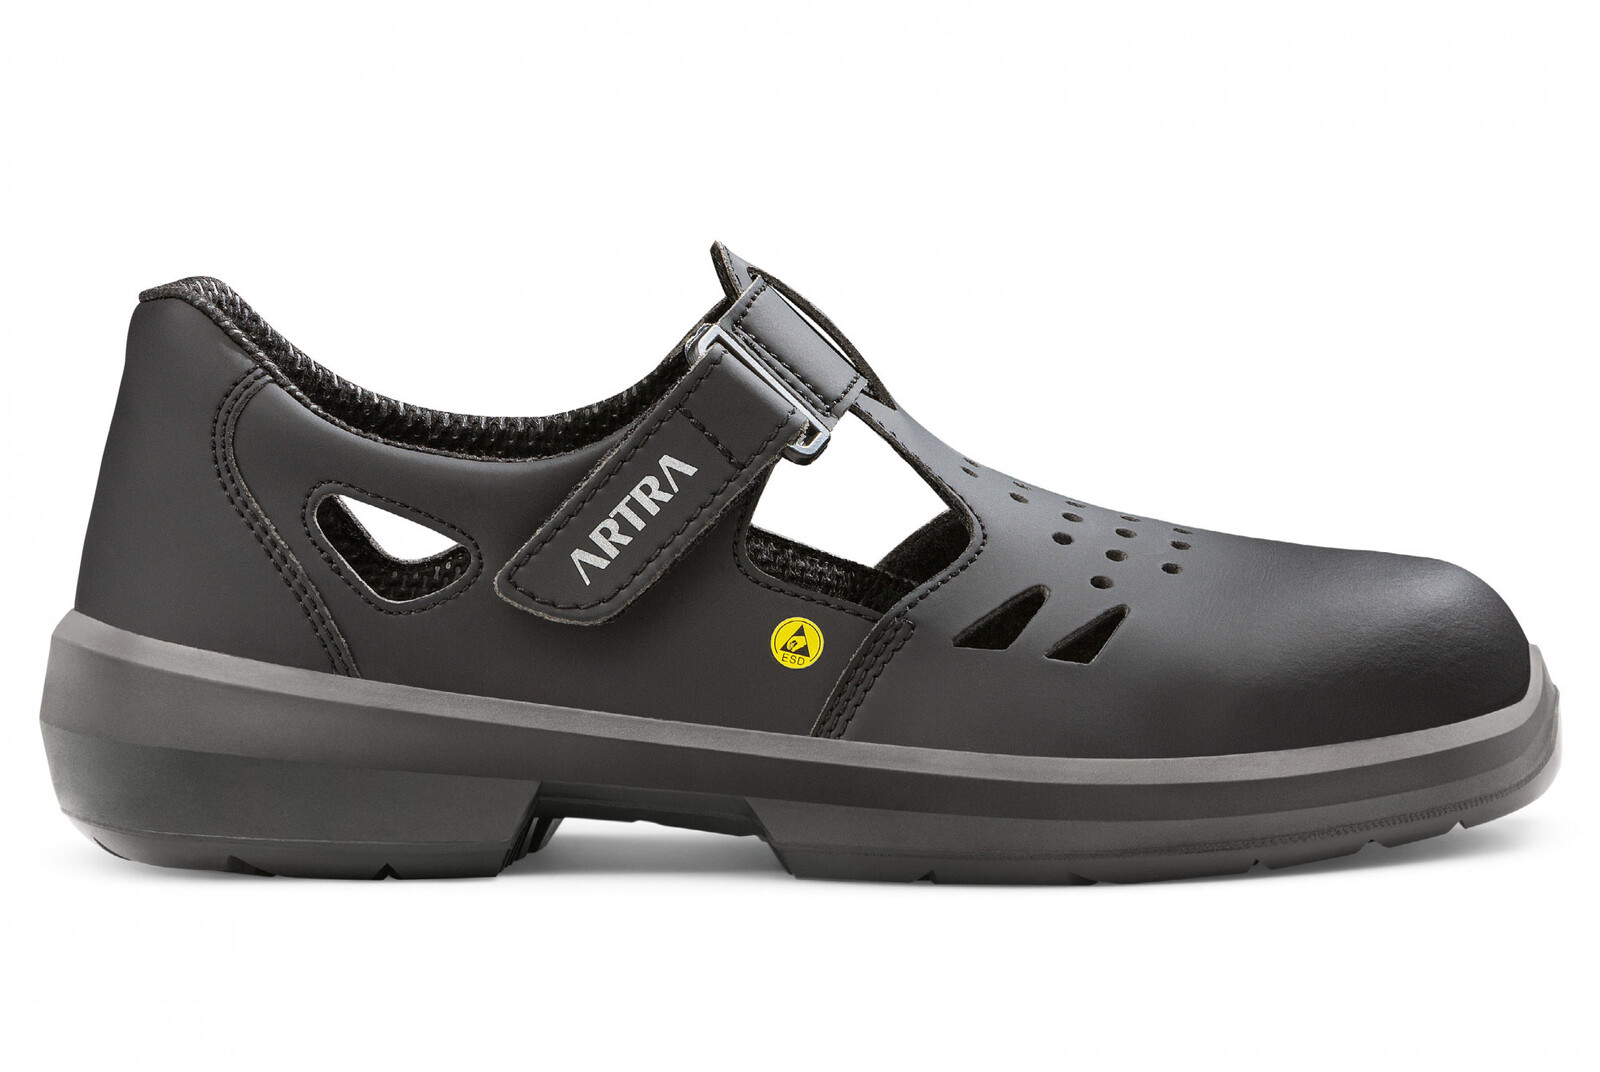 Bezpečnostné sandále Artra Armen 9008 6760 S1P SRC ESD MF - veľkosť: 42, farba: čierna